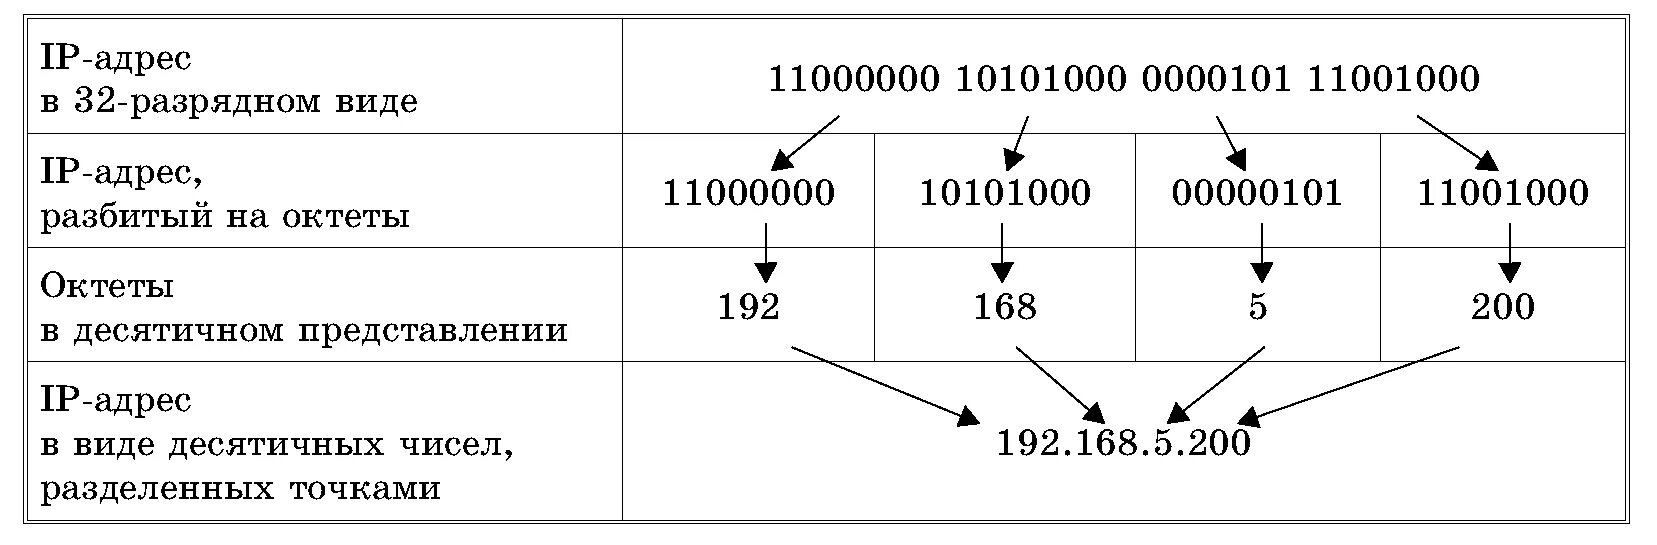 Ip адресу 64. Структура IP адреса. Как записывается IP-адрес компьютера?. Из чего состоит IP адресации. Из чего состоит IP адрес компьютера.